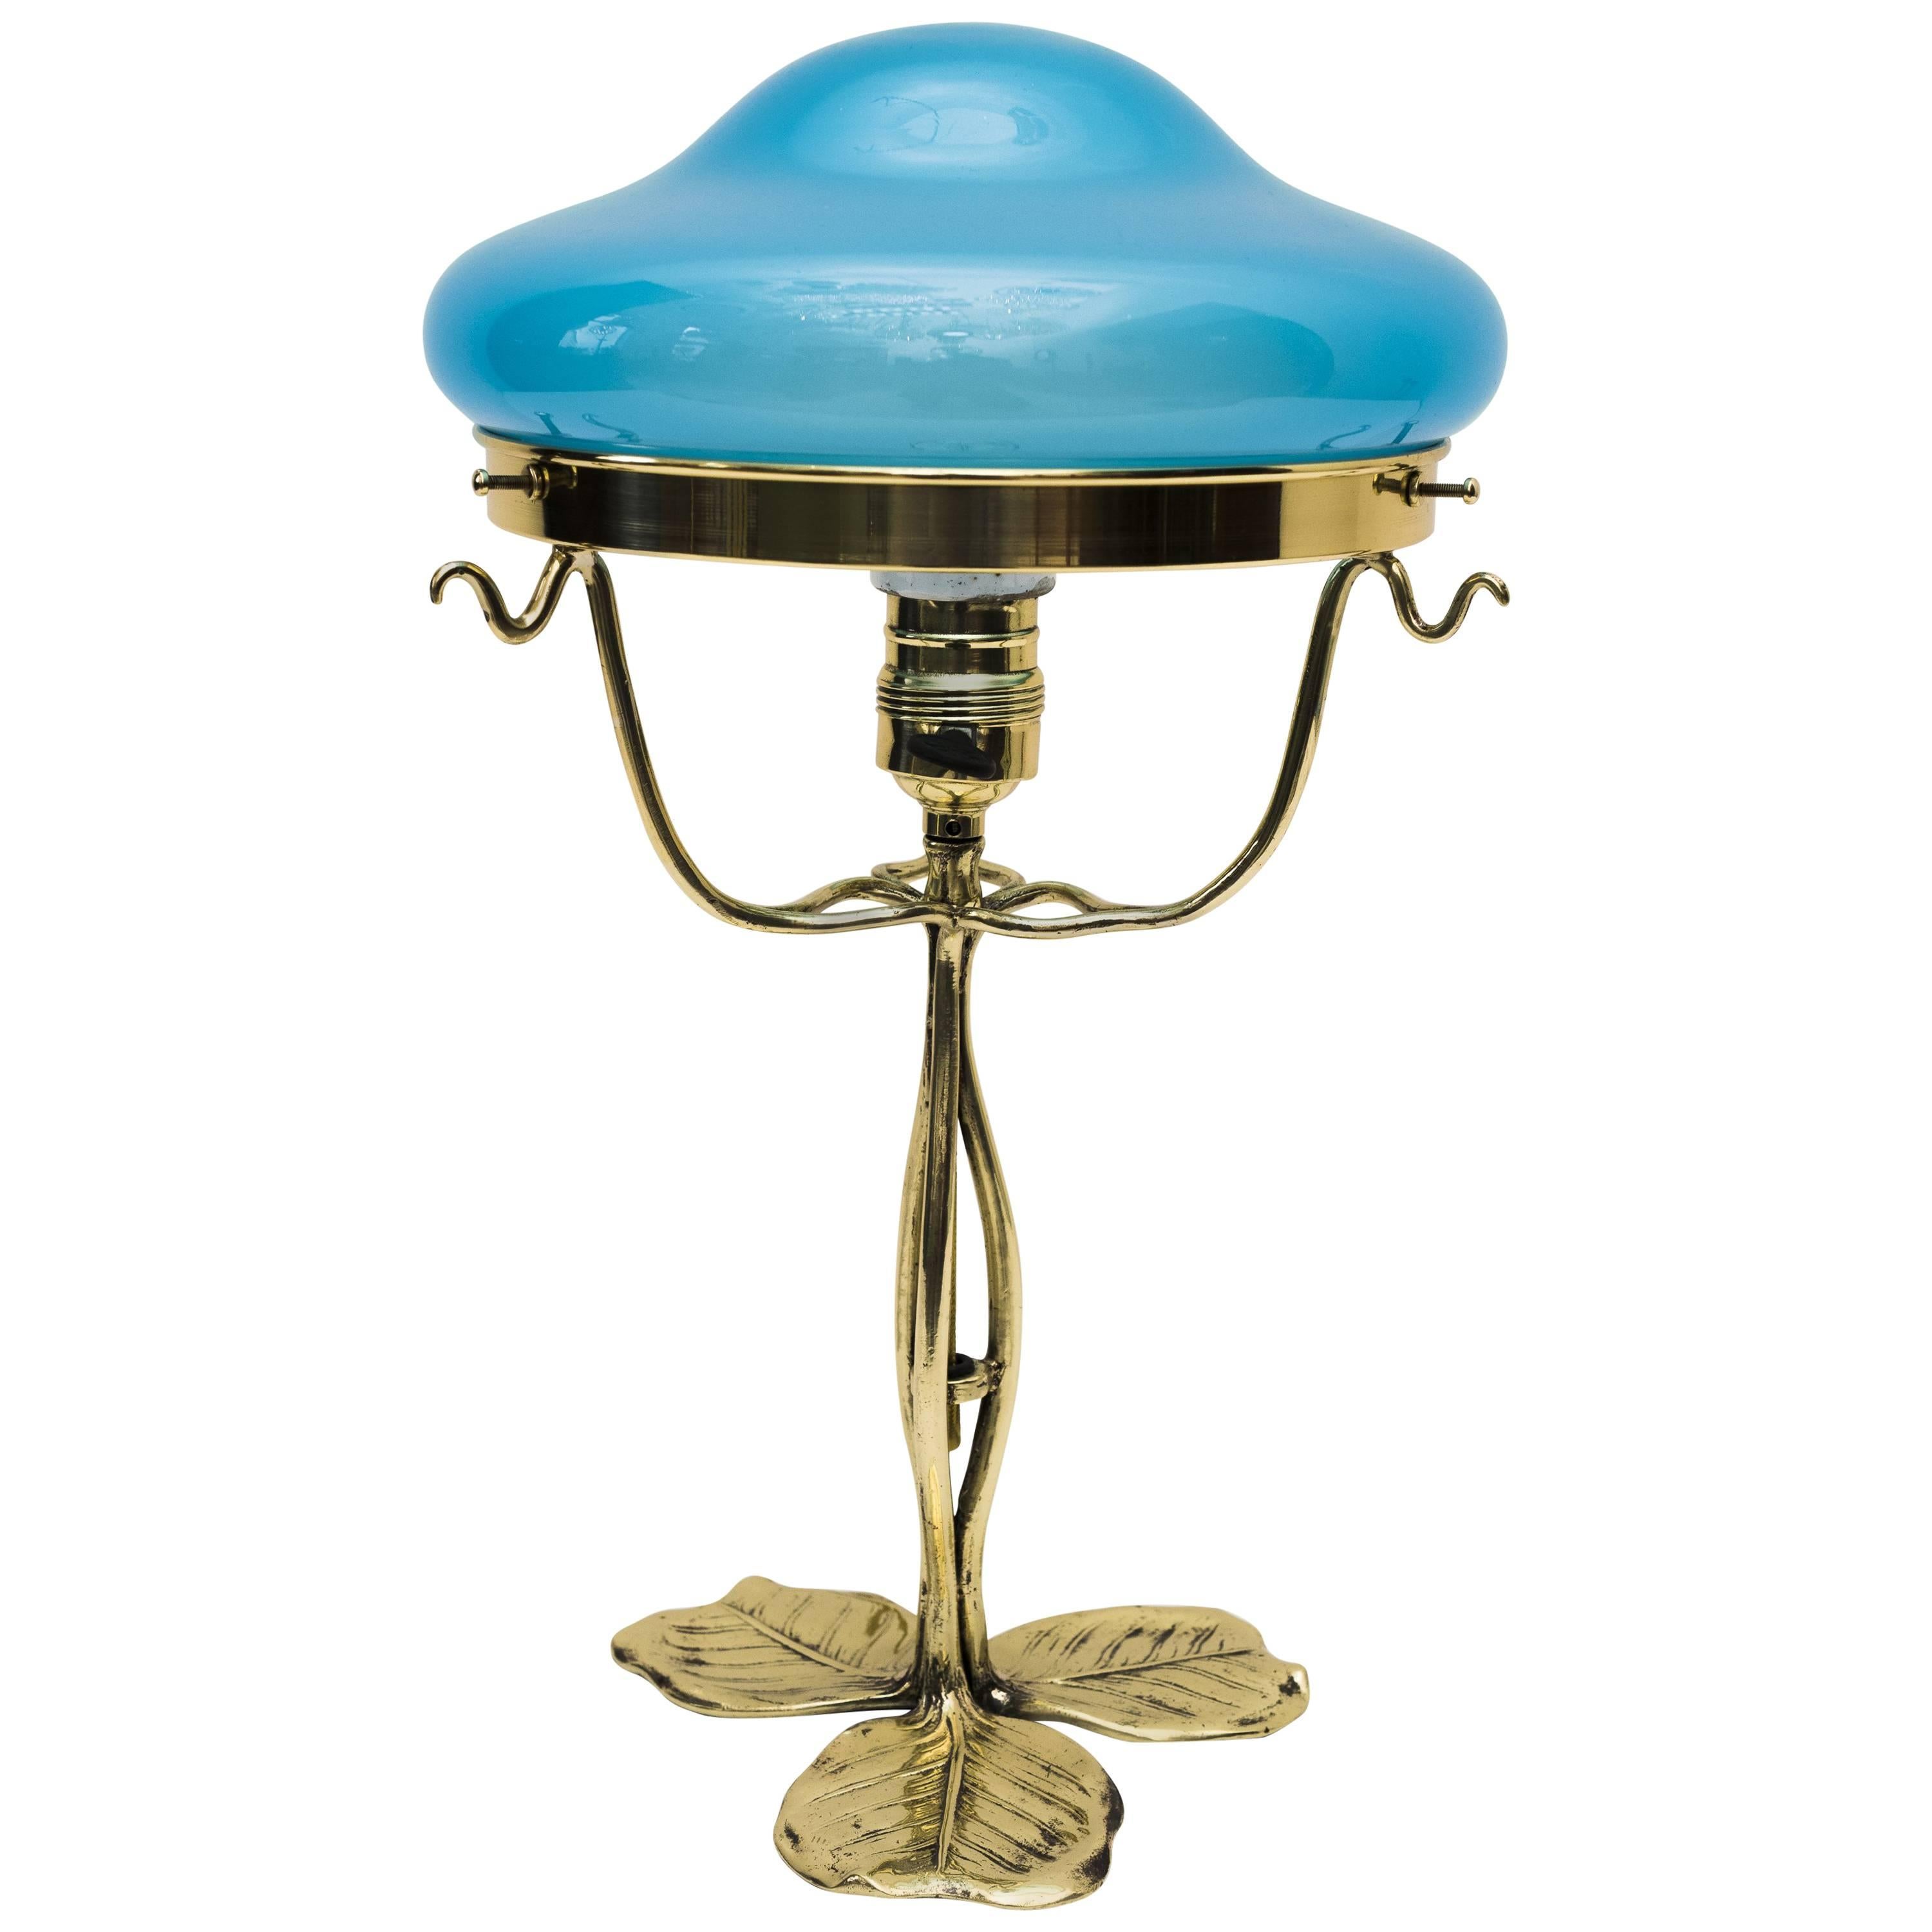 Jugendstil Floral Table Lamp with Opaline Glass Shade